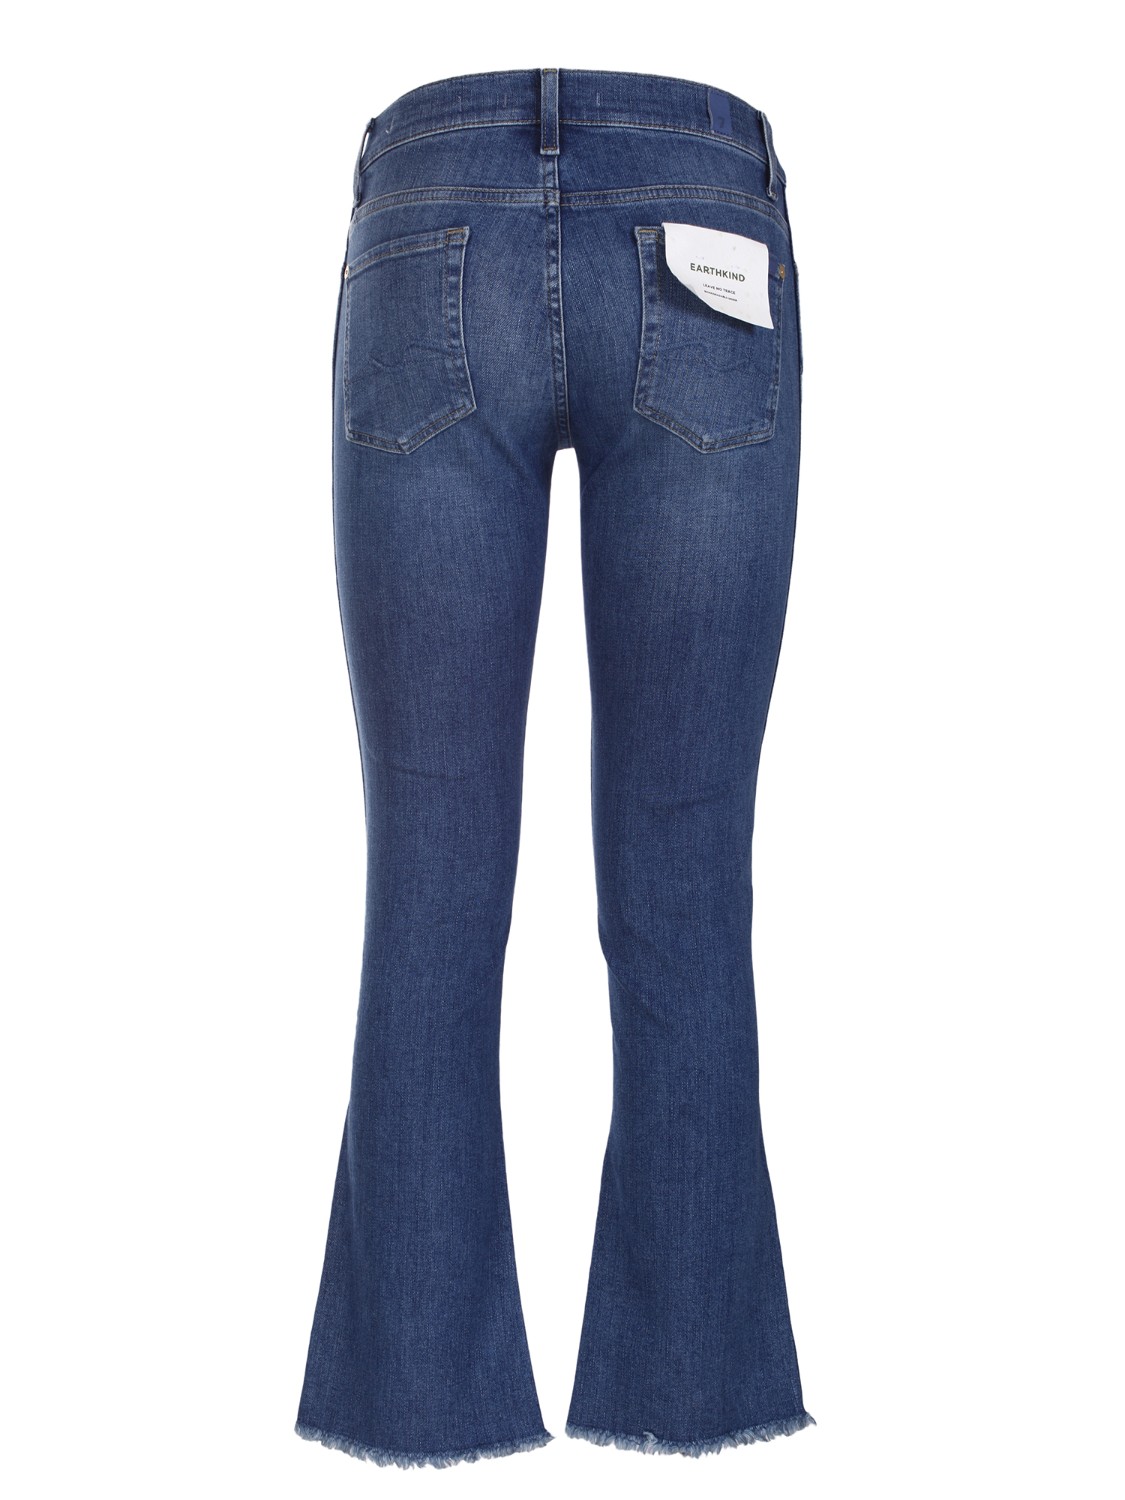 shop SEVEN  Jeans: Seven jeans elasticizzato.
Ankle boot.
Chiusura con zip e bottone.
Lavaggio medio.
Orlo con taglio vivo.
Composizione: 97% cotone 3% elastan. 
Fabbricato in Tunisia.. ANKLE JSABC120PS-D number 1434715